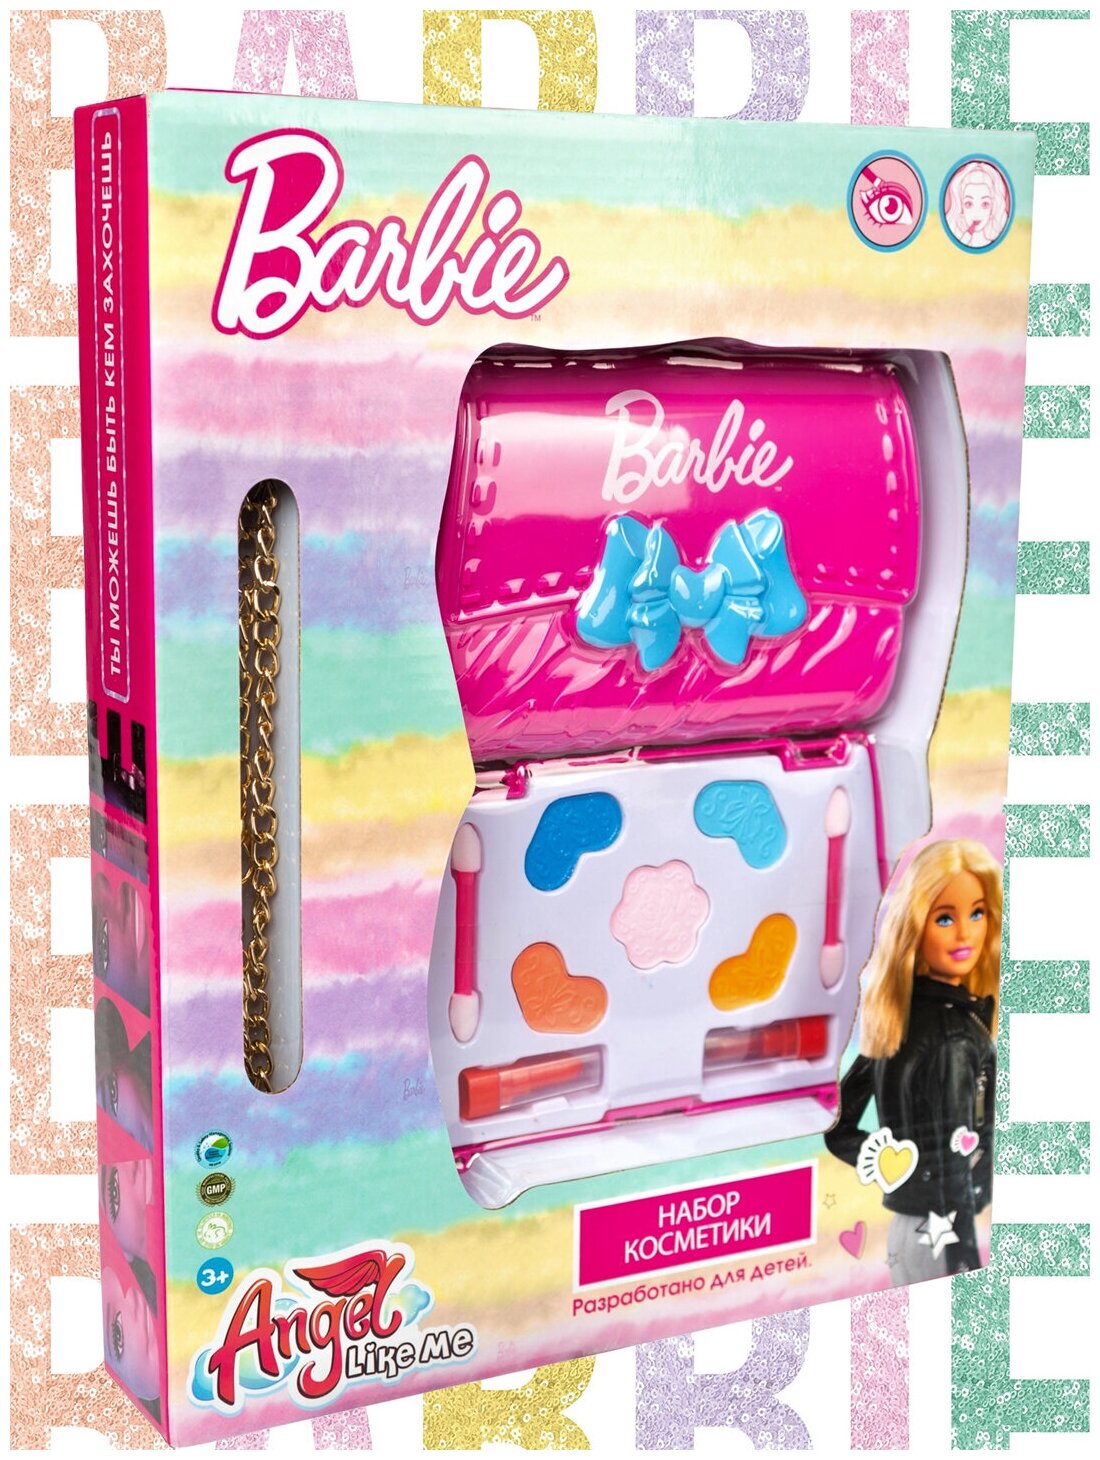 Angel Like Me / Barbie / Детская косметика / Косметика для девочек / Детская декоративная косметика / Набор детской косметики / Набор косметики